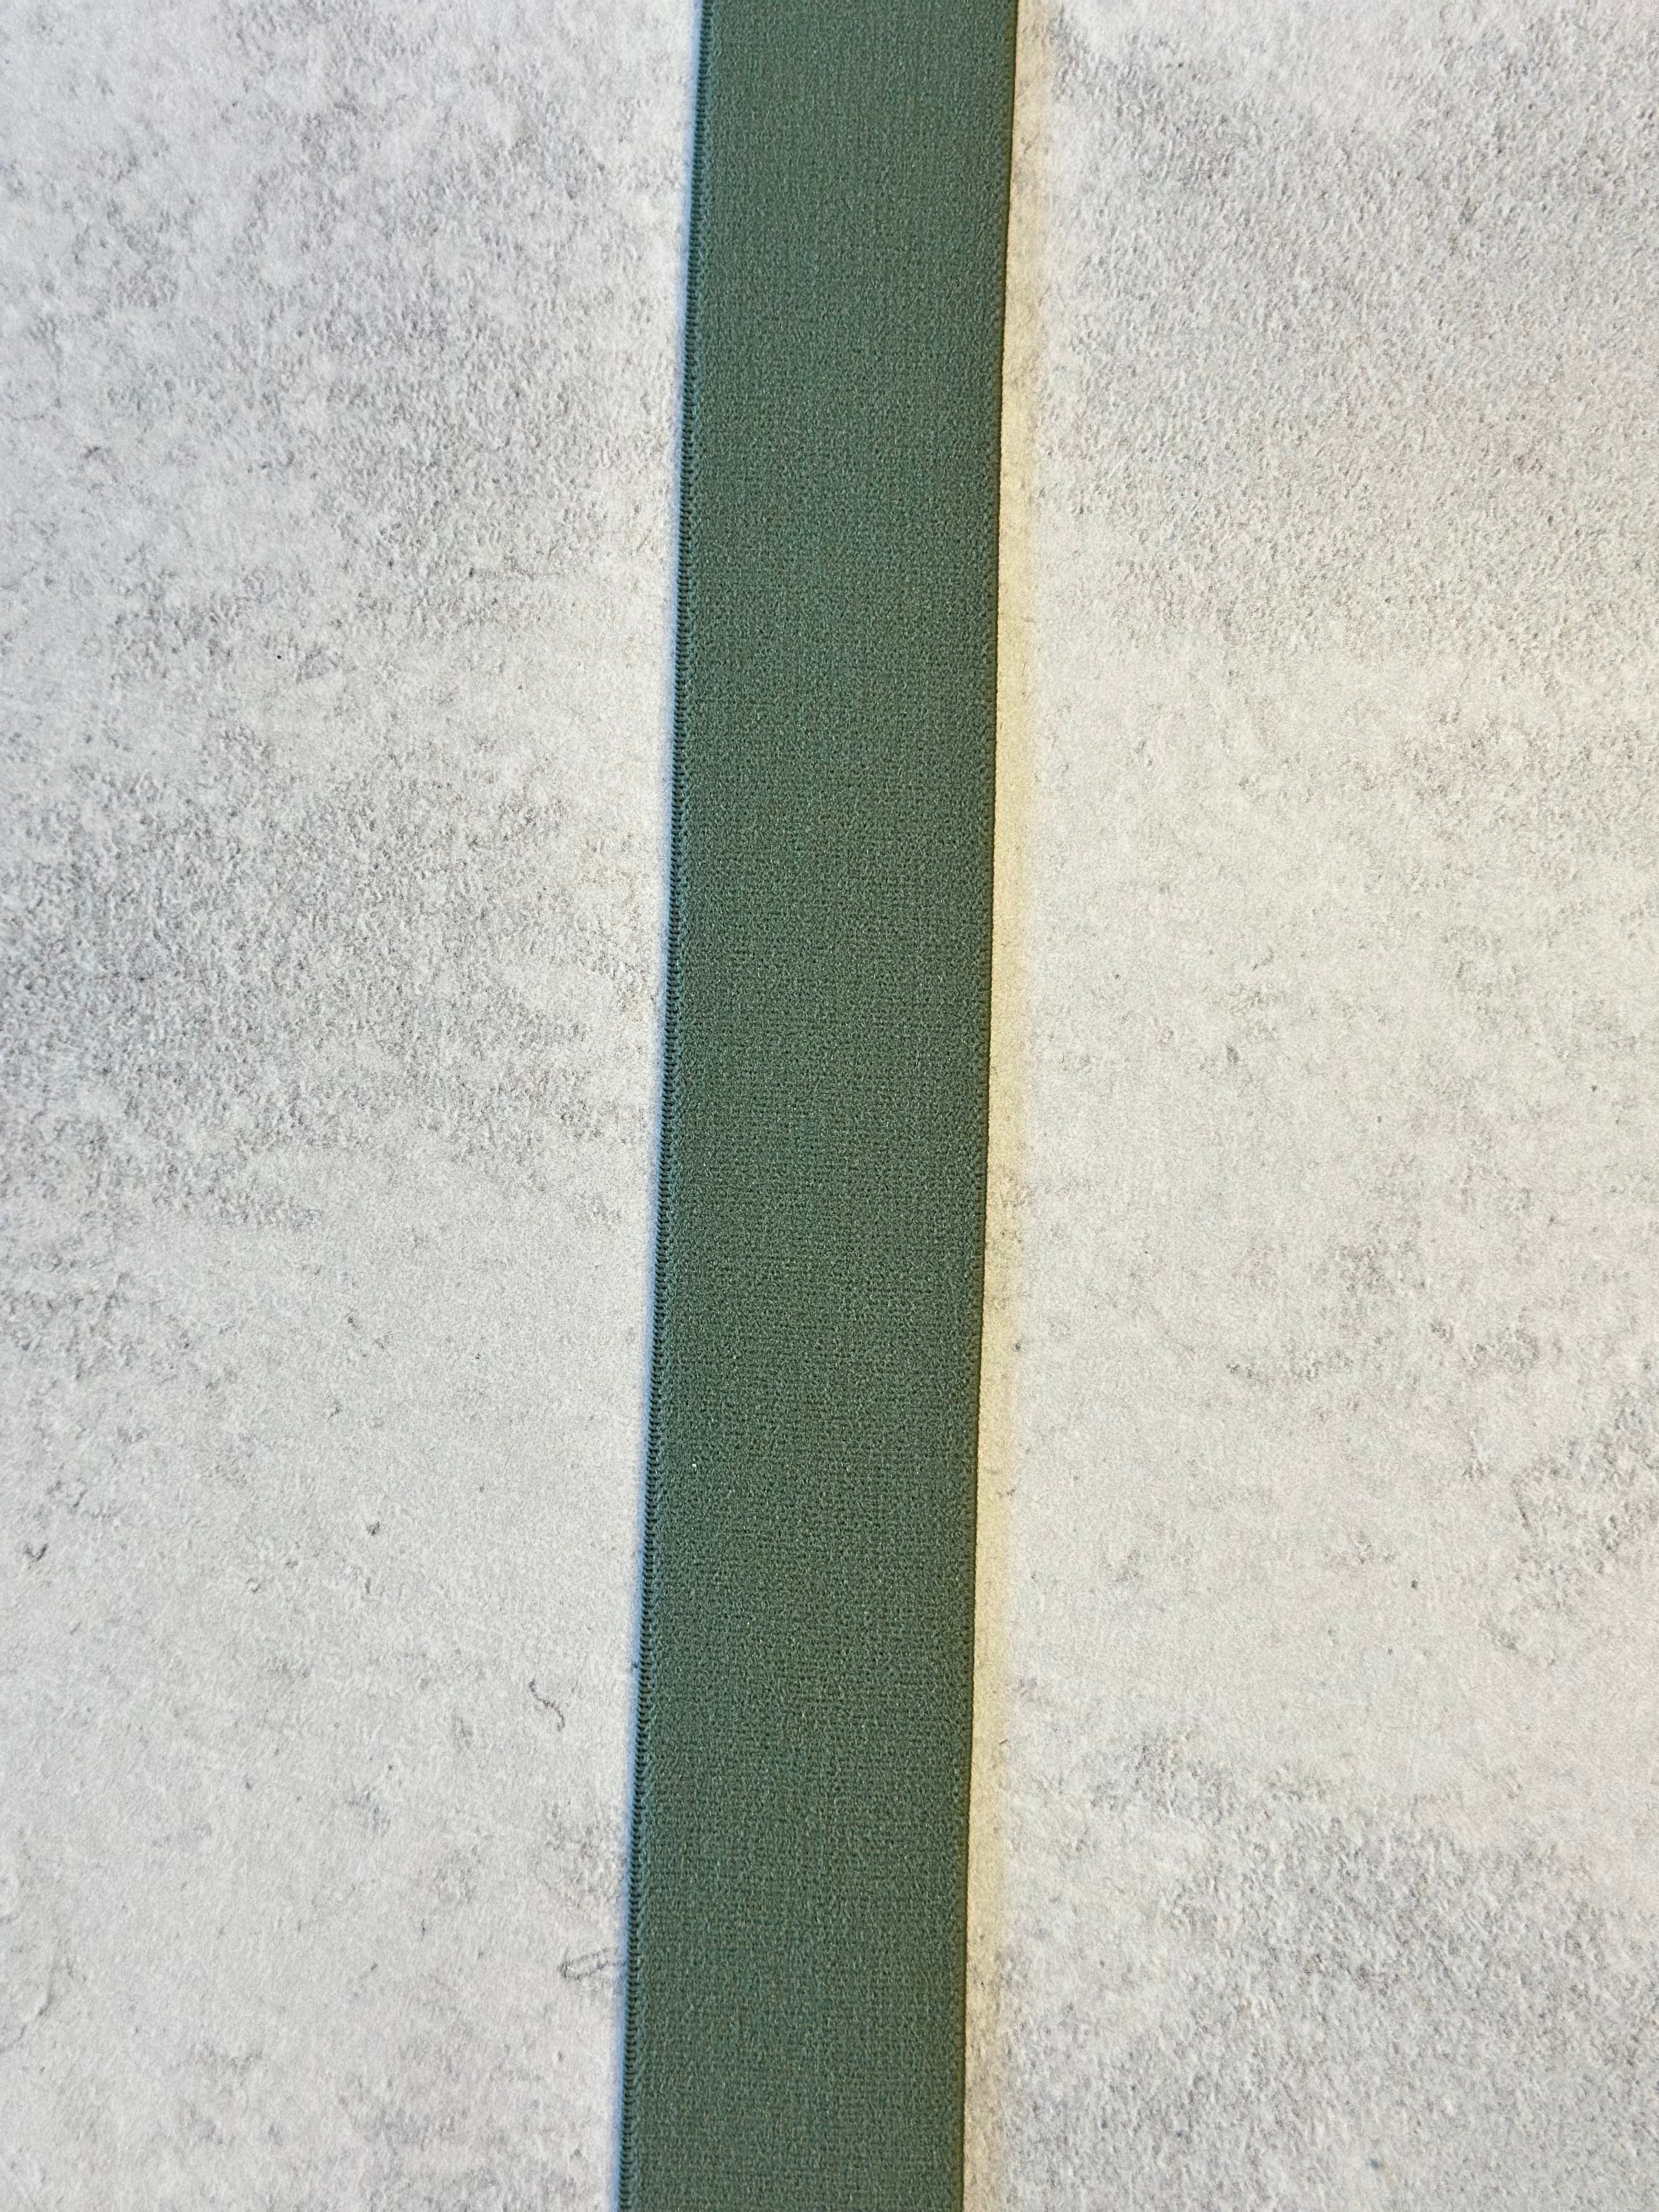 Gummi 3cm  Altgrün